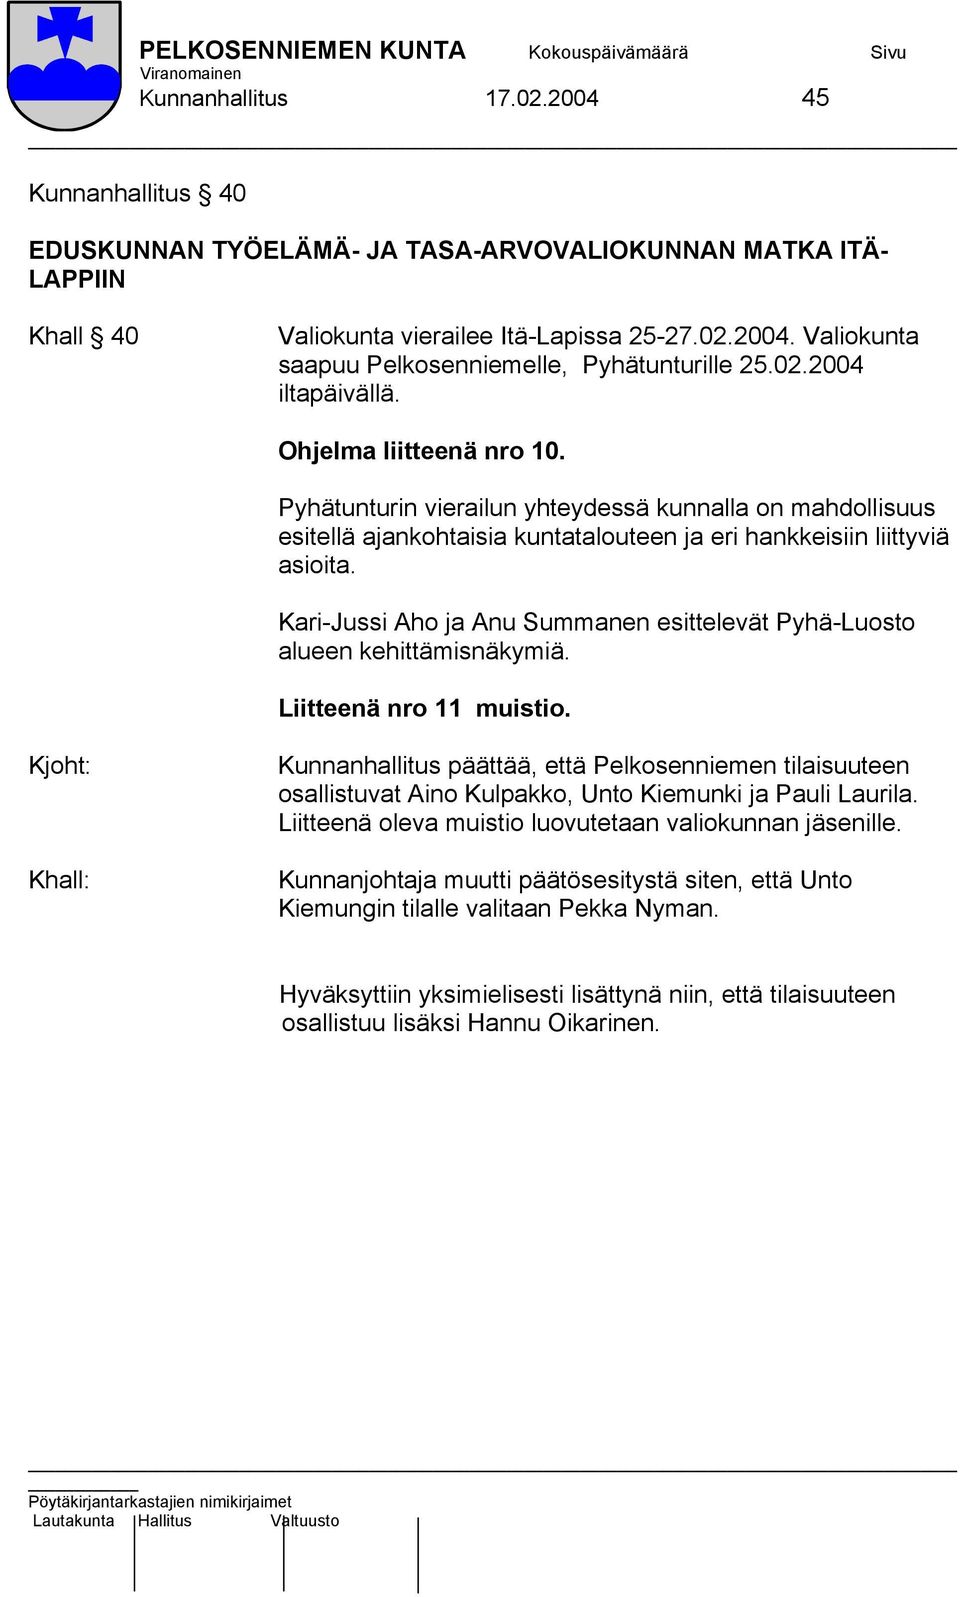 Kari-Jussi Aho ja Anu Summanen esittelevät Pyhä-Luosto alueen kehittämisnäkymiä. Liitteenä nro 11 muistio.